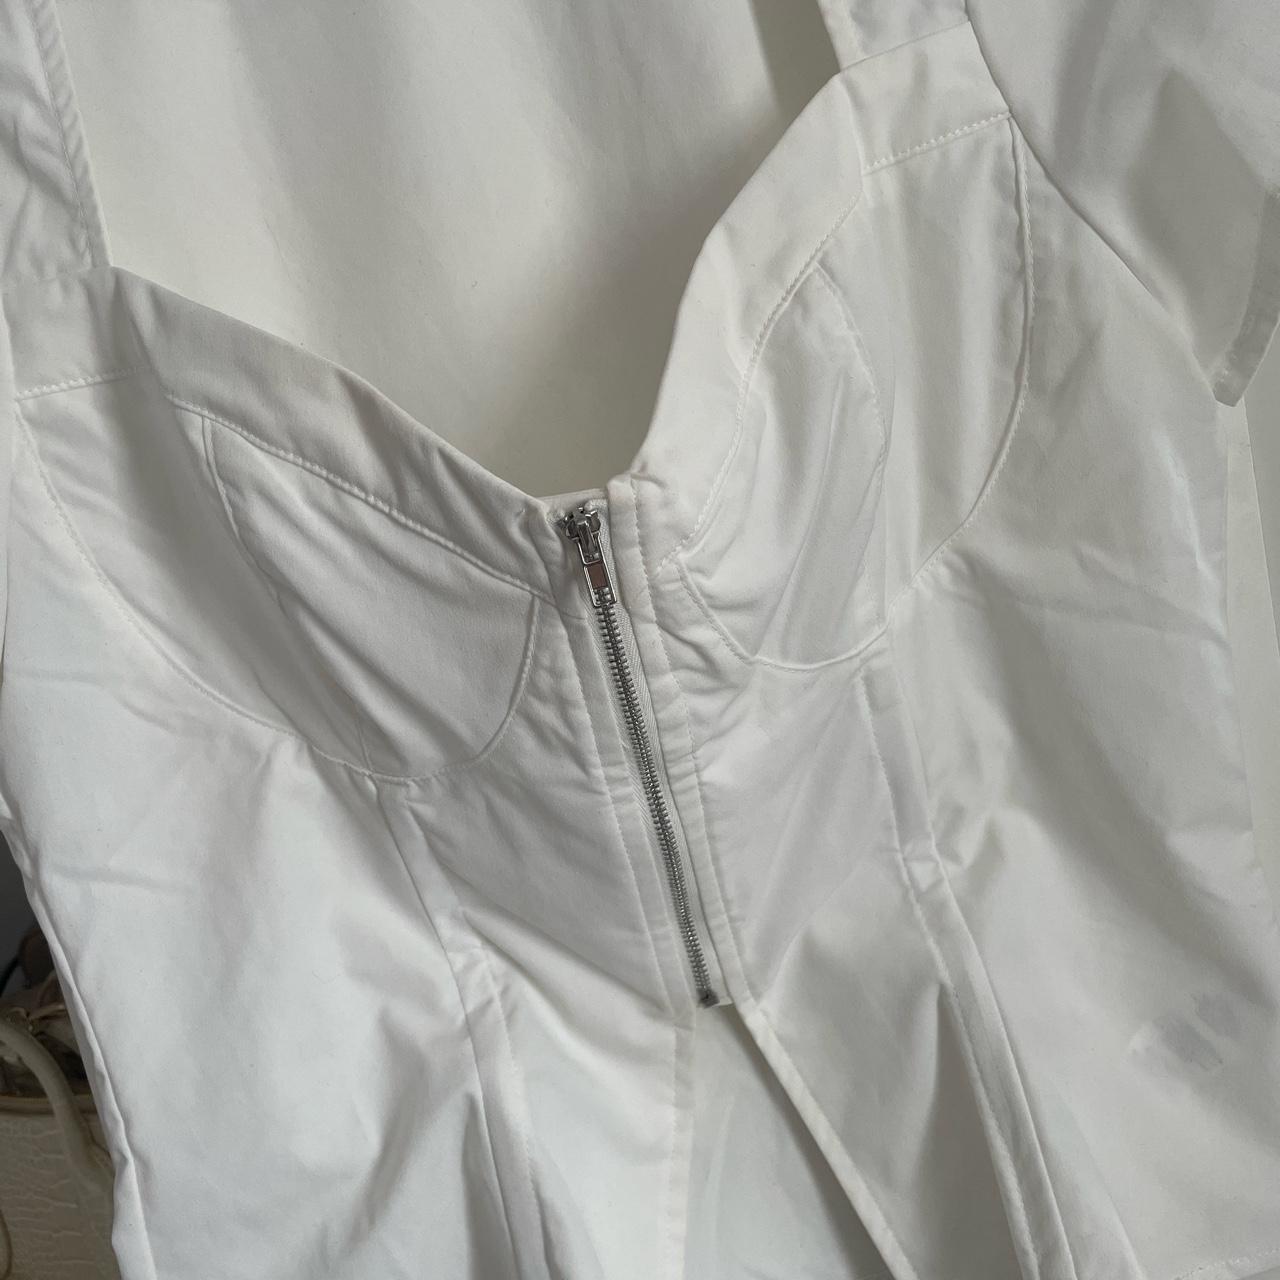 PLT white corset top with zip. UK size 12. Worn... - Depop